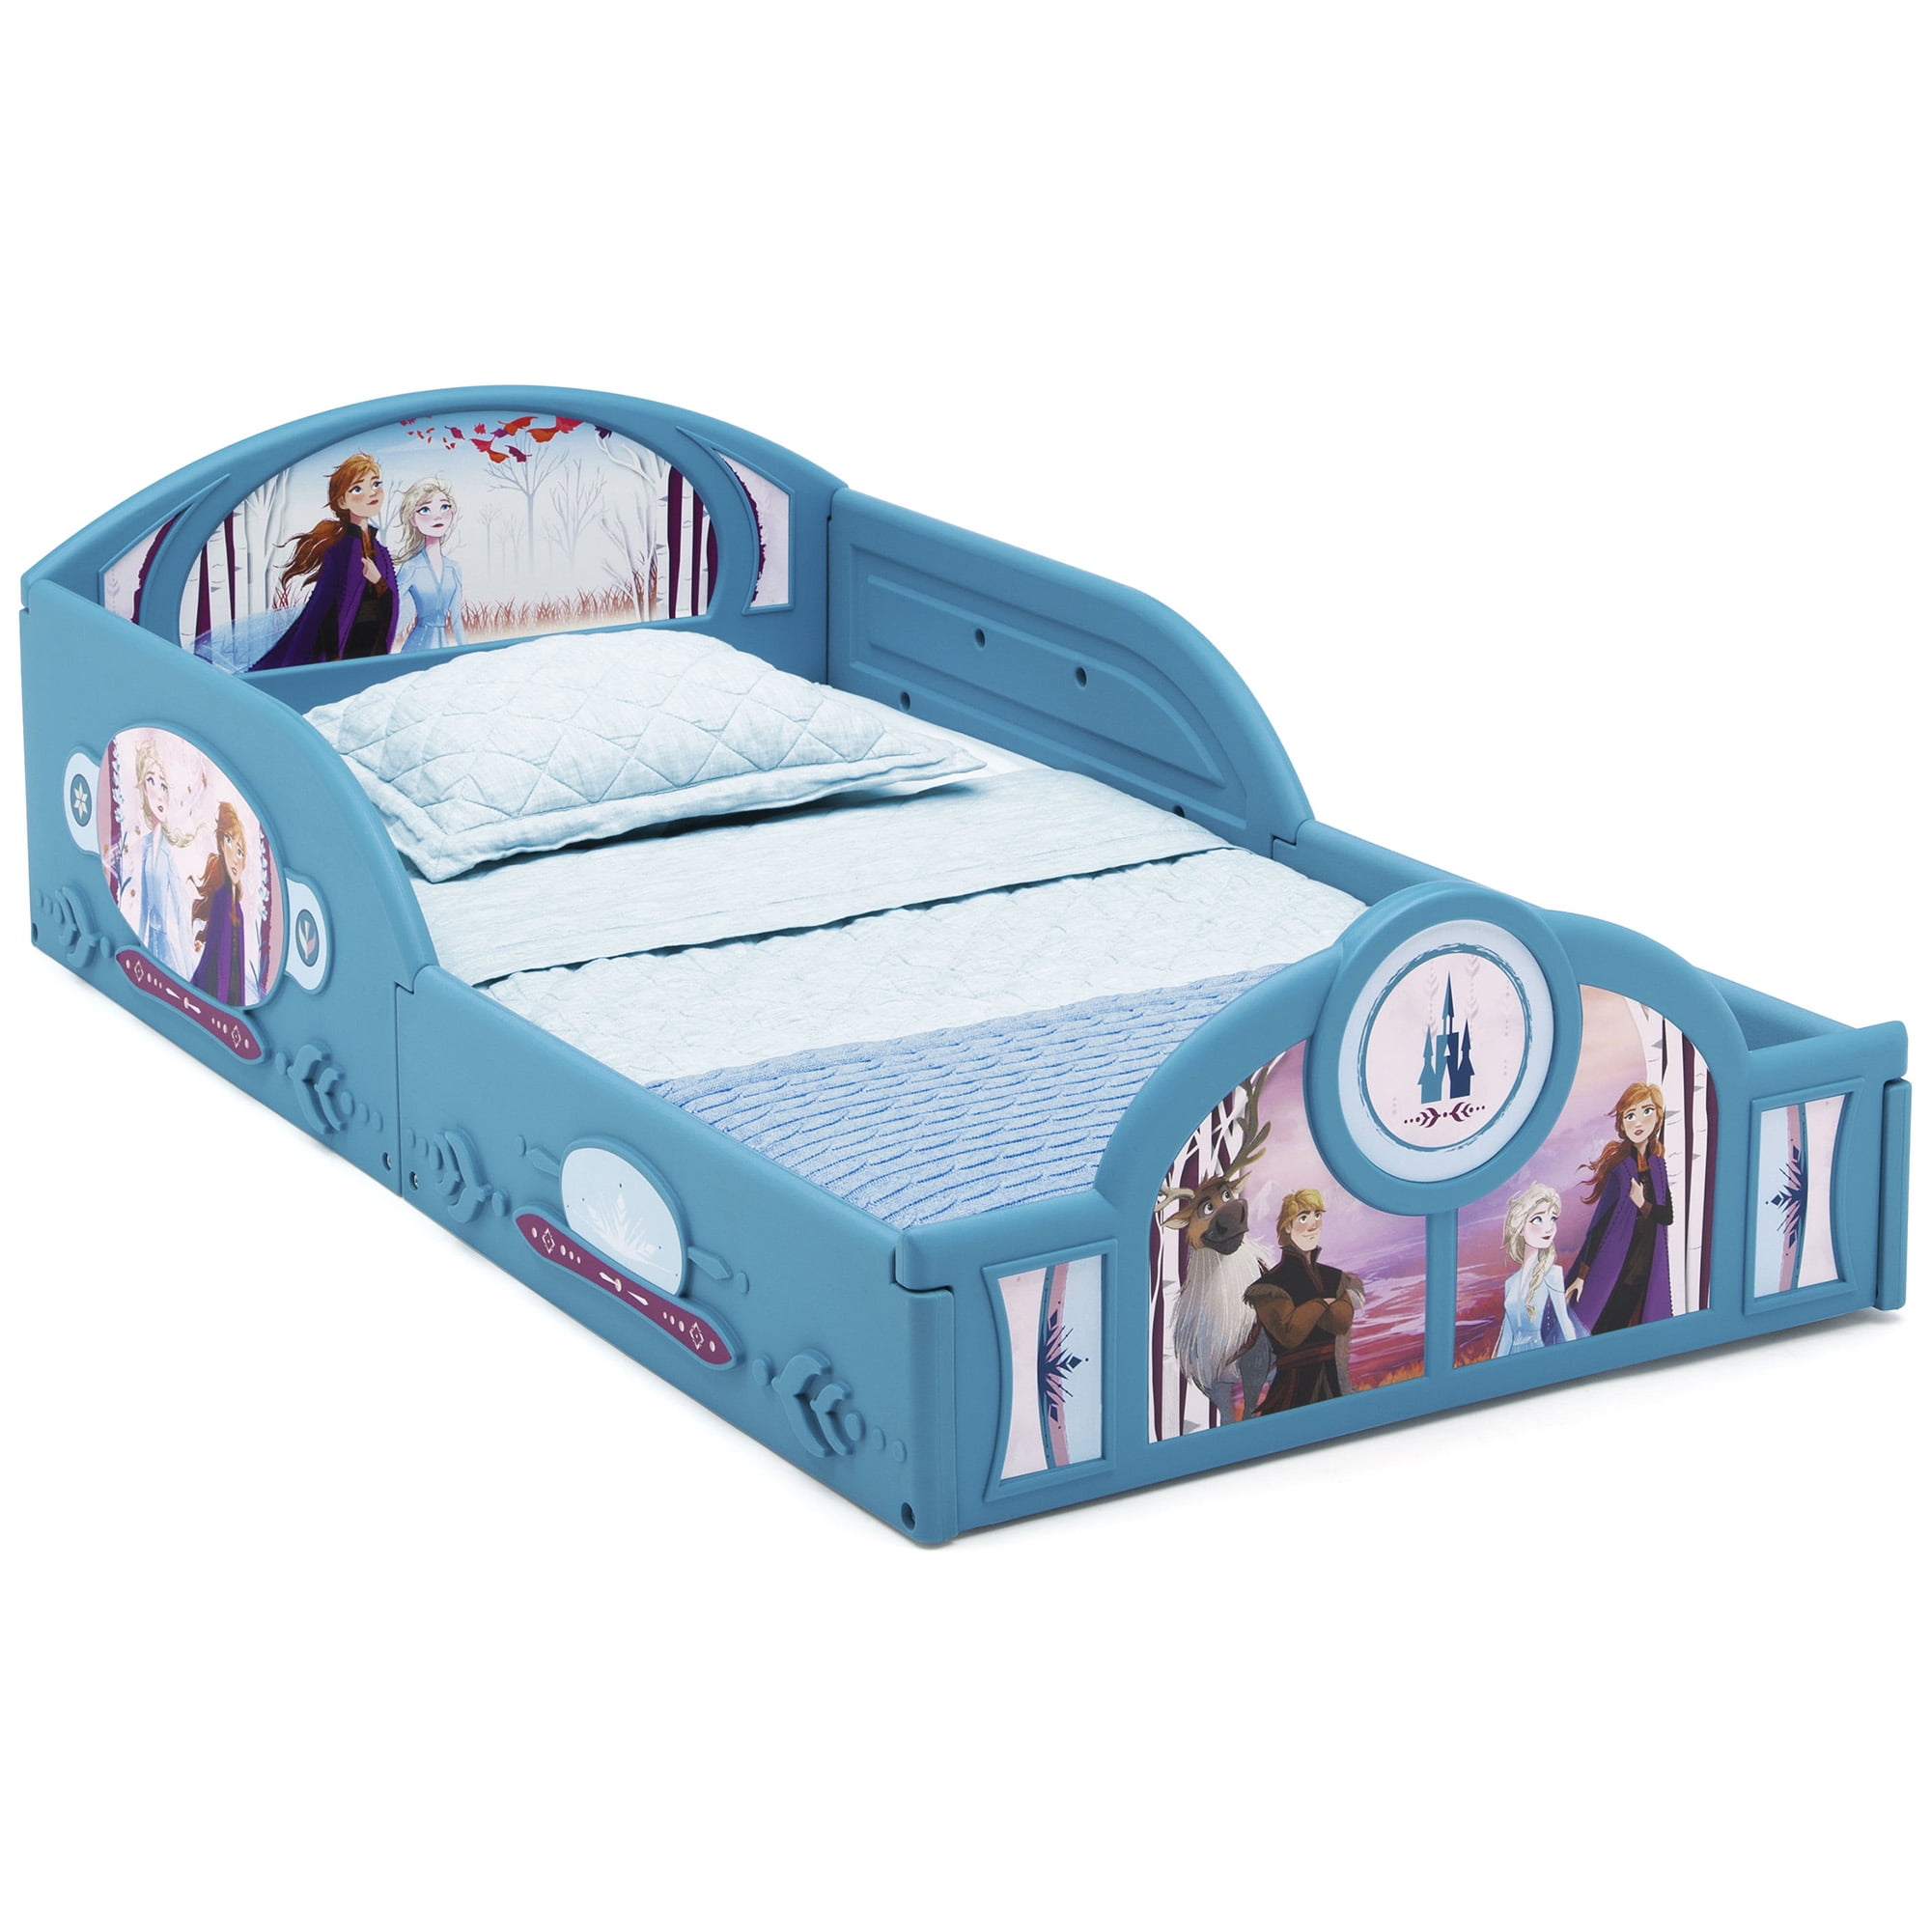 Disney Frozen 2 Toddler Bed with Storage Plus Deluxe Foam Mattress Kids Bedroom 